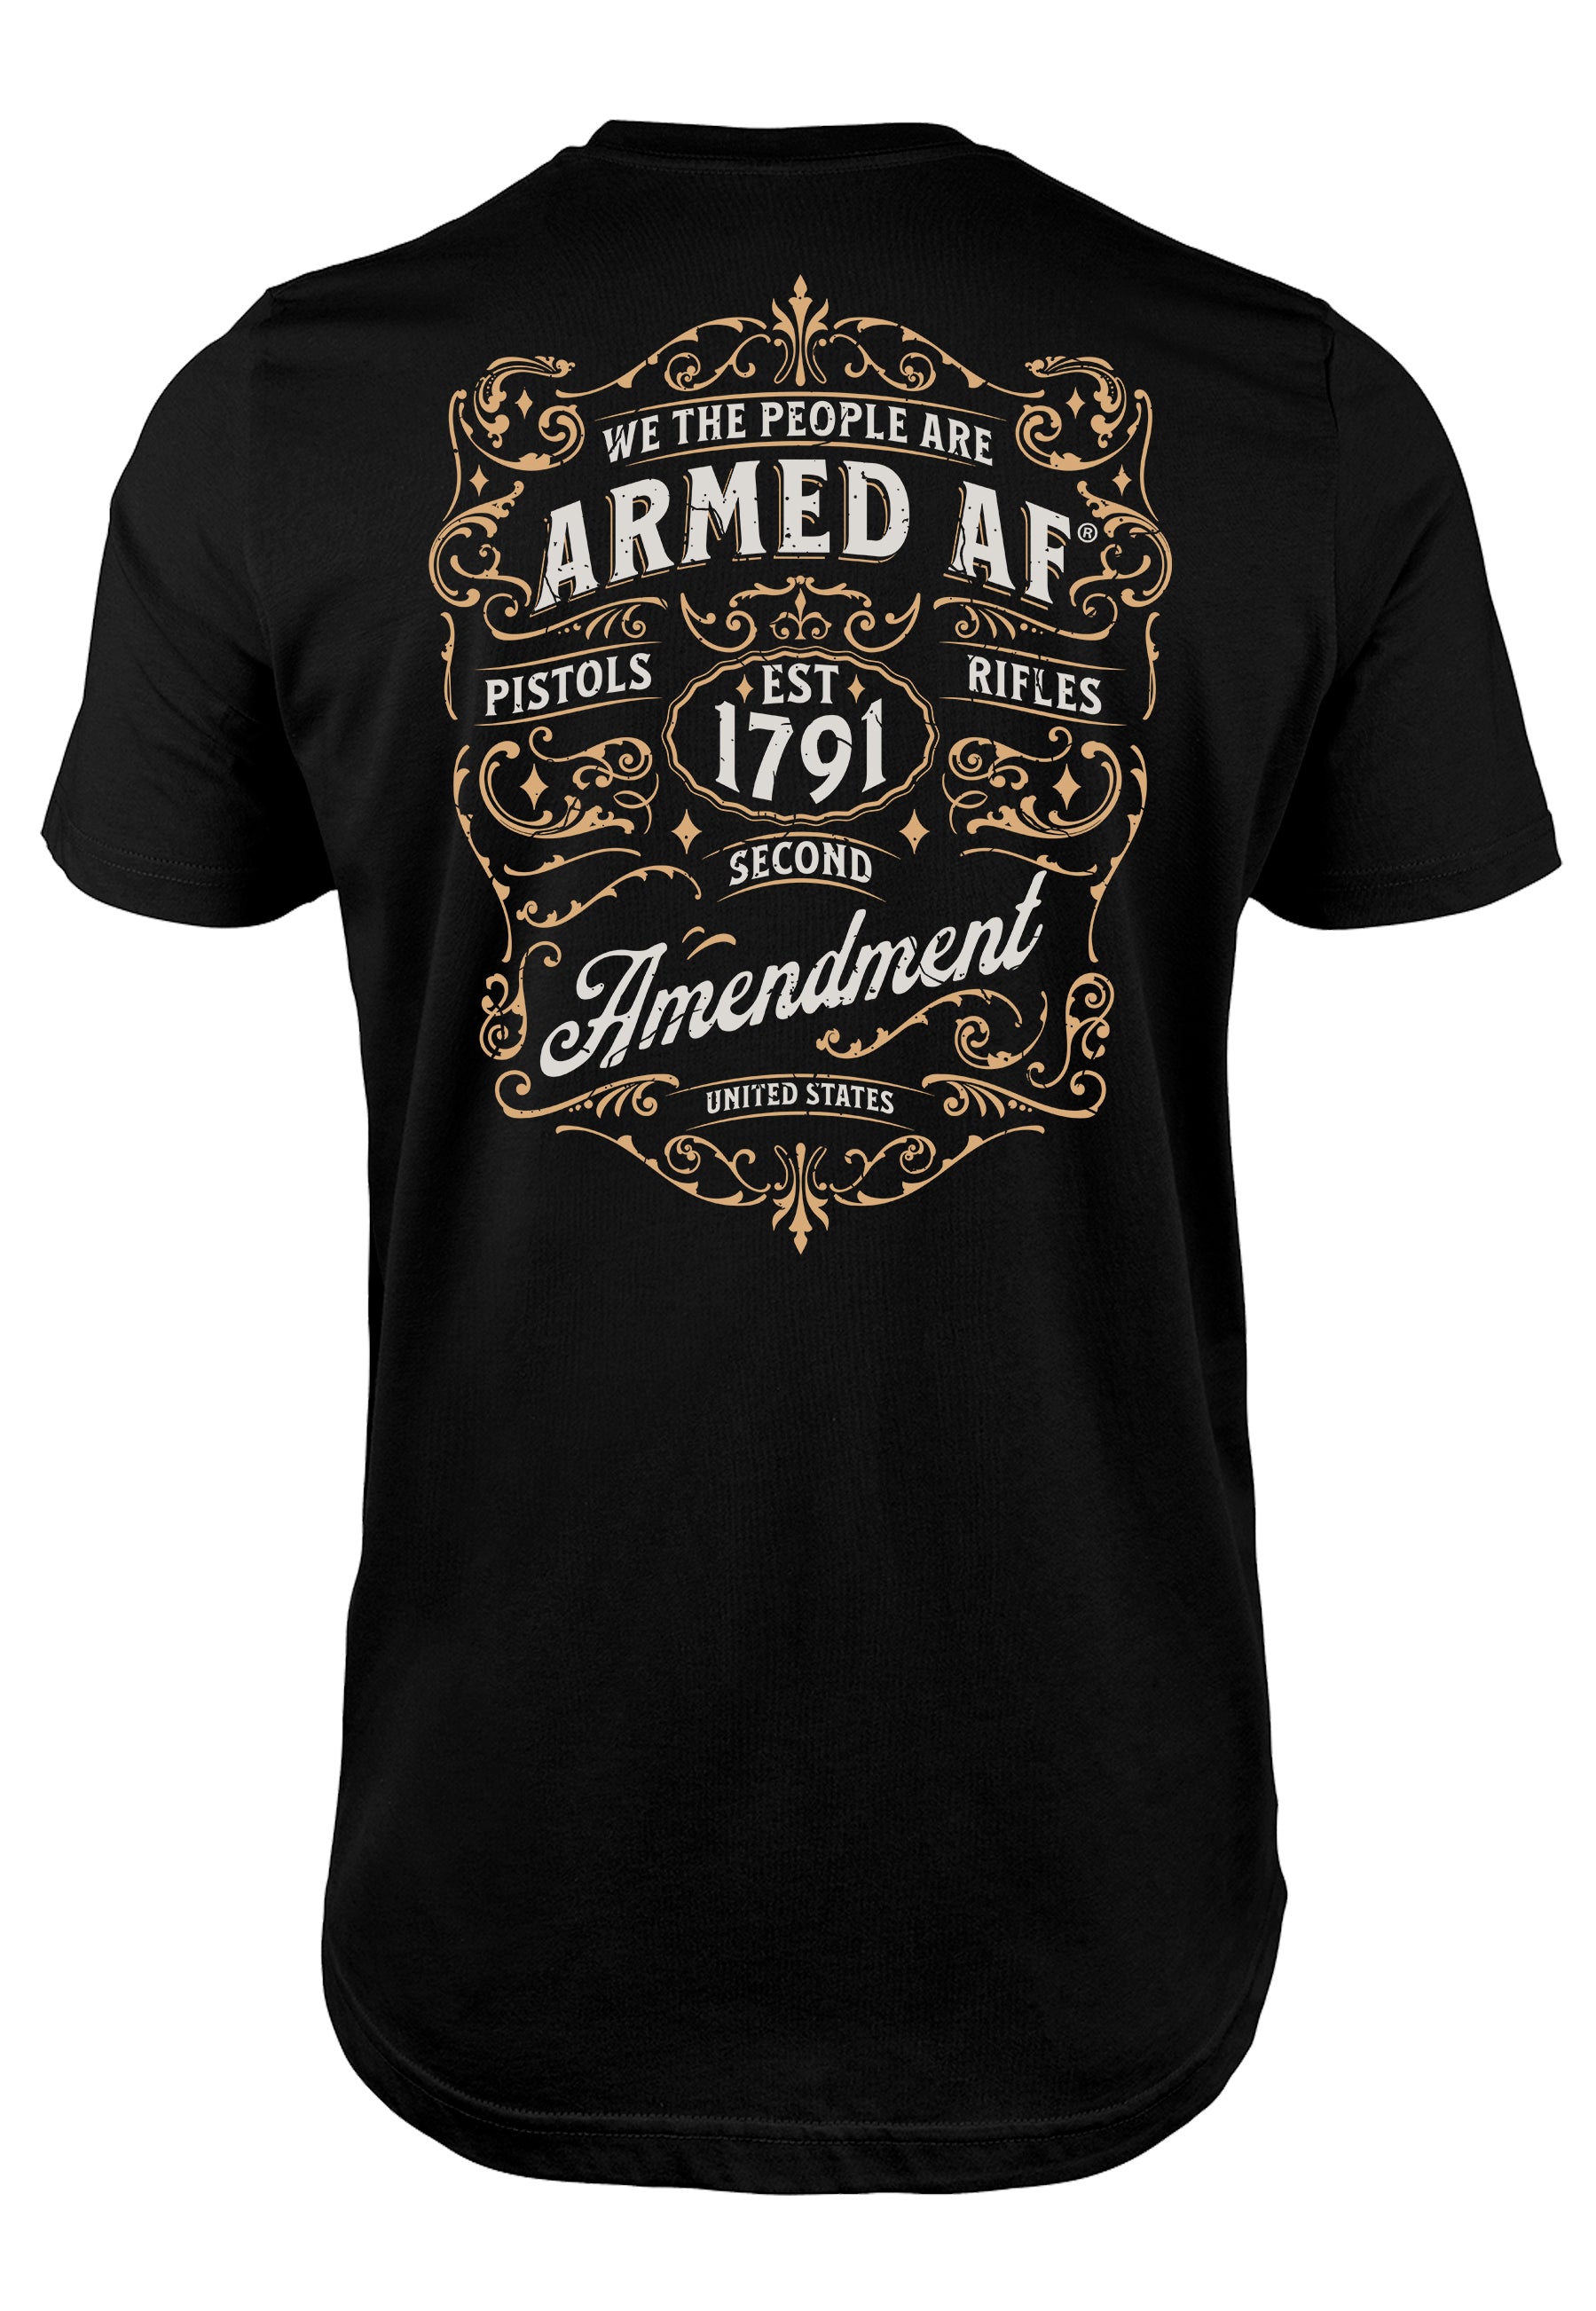 Armed AF® second amendment t-shirt design